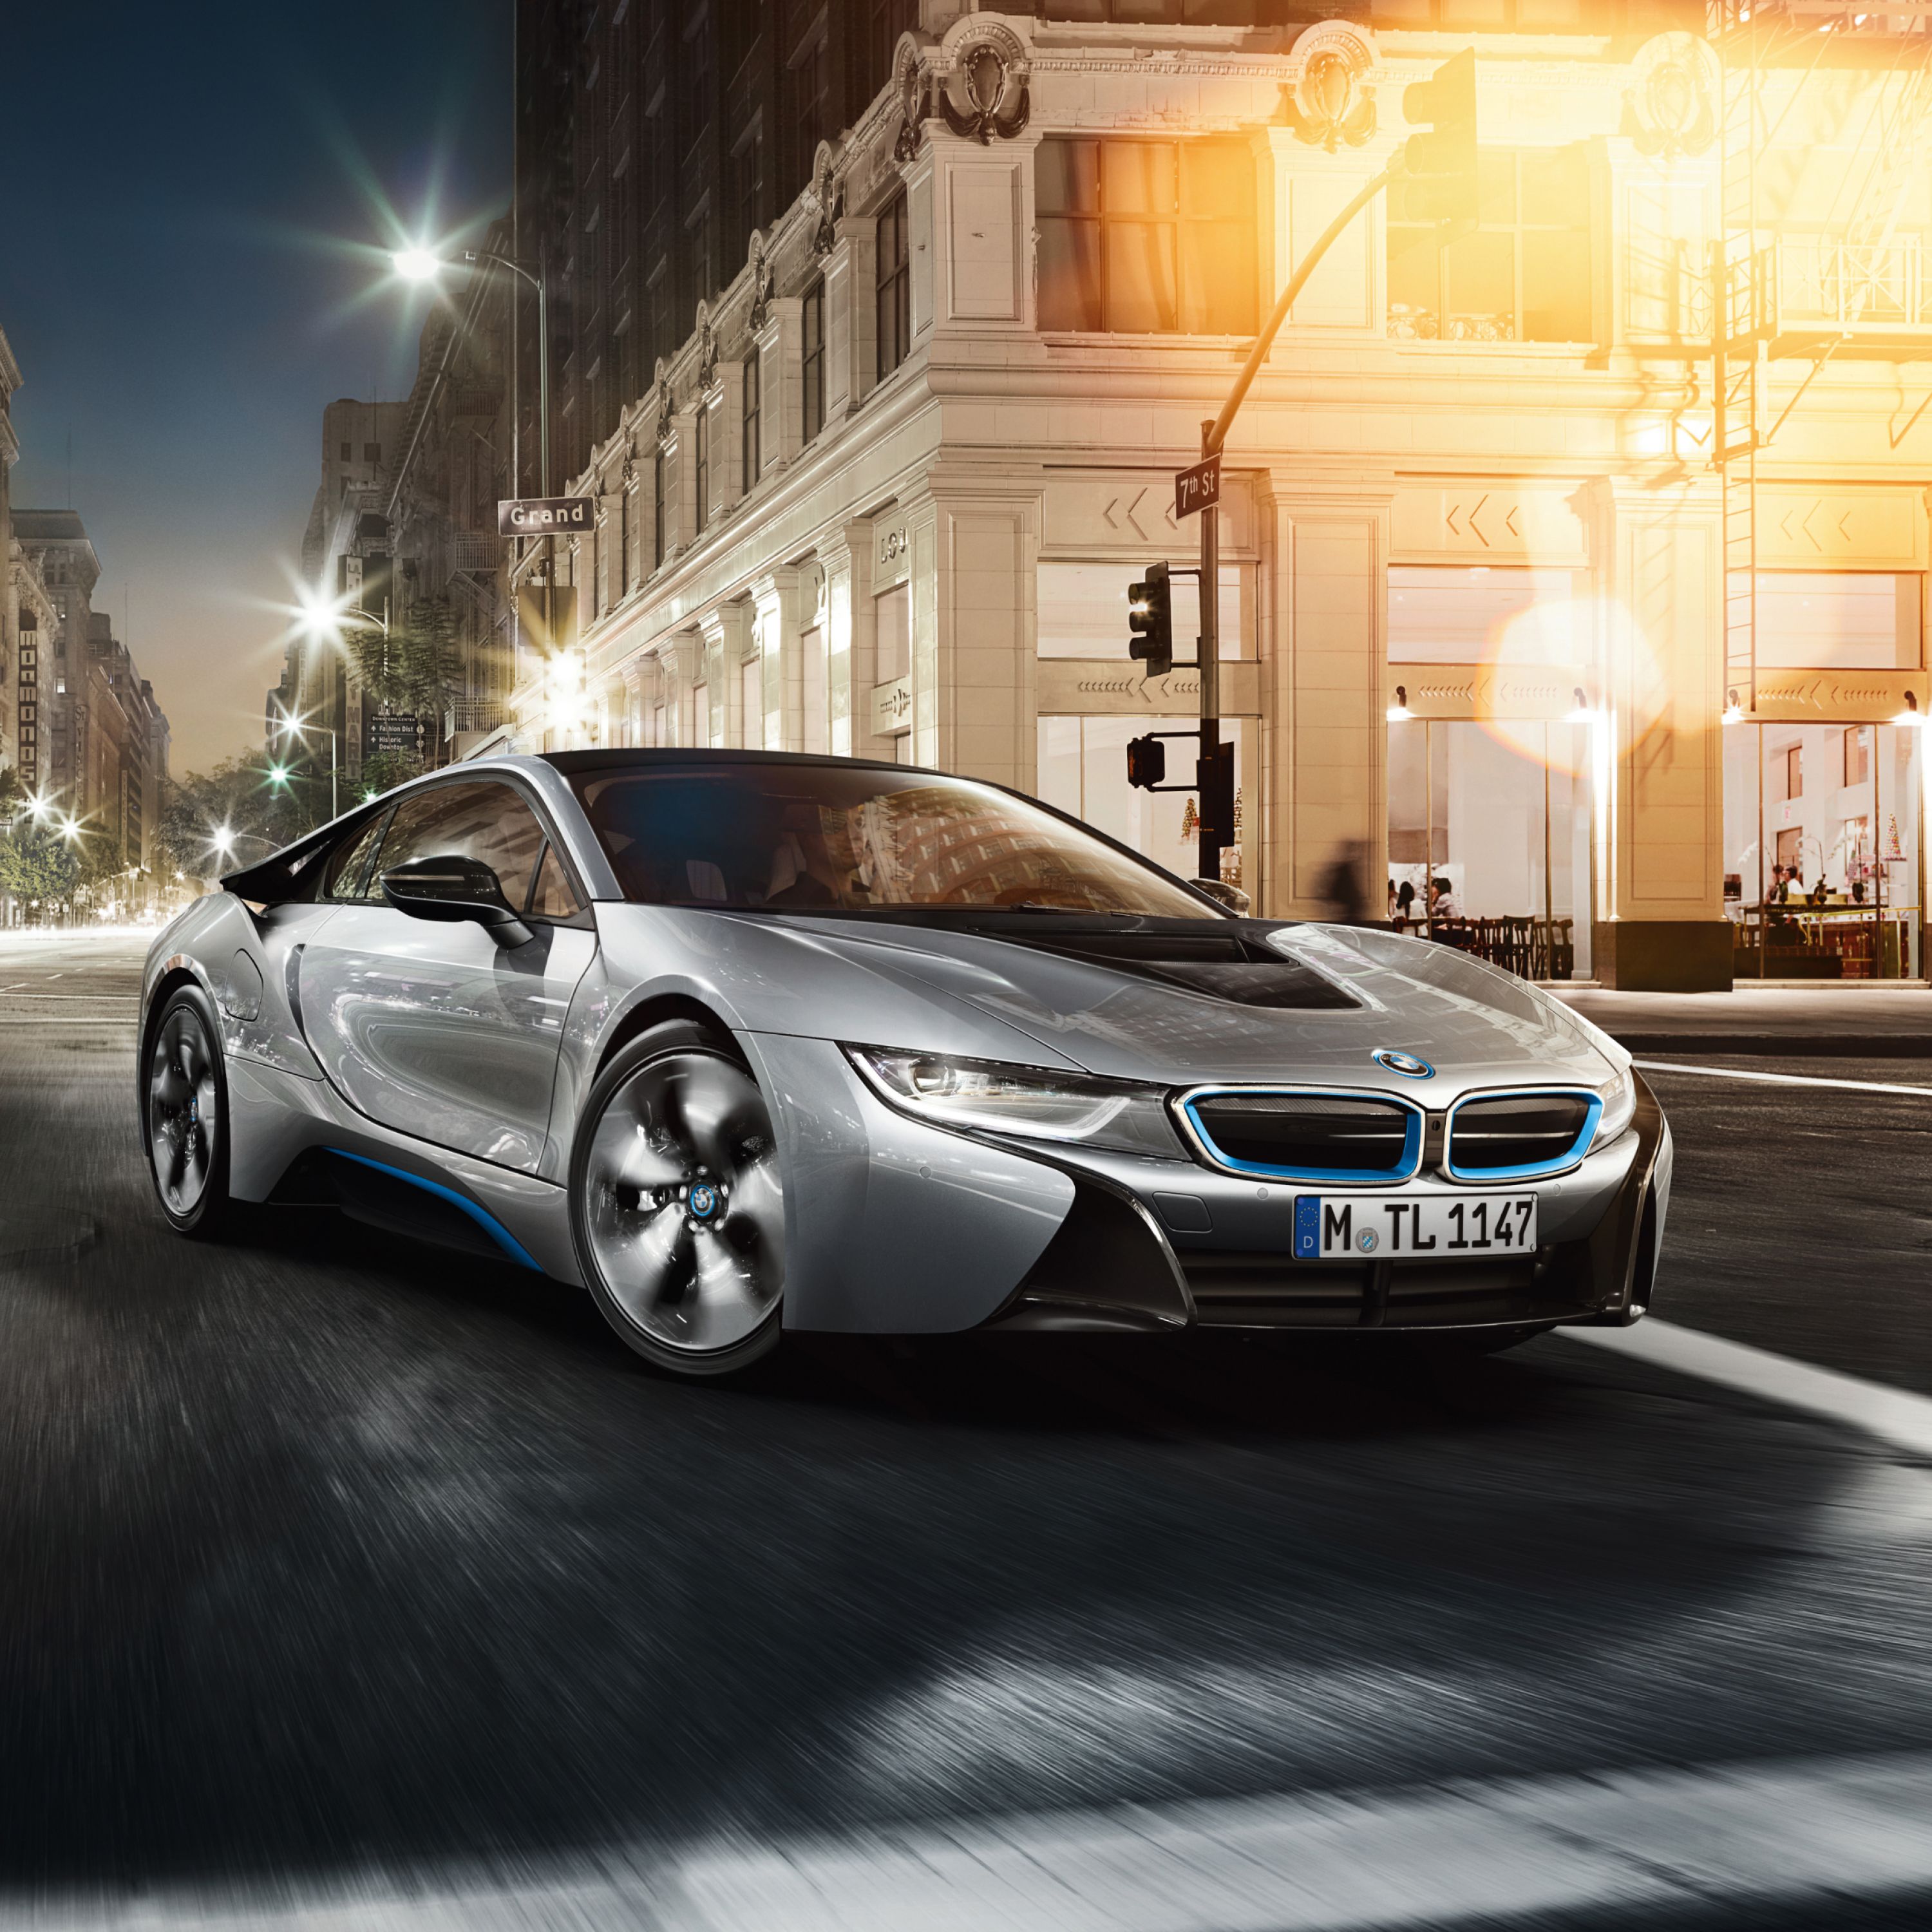 Srebrny sportowy samochód hybrydowy plug-in BMW i8 zaparkowany przed Grand Hotelem w dużym mieście